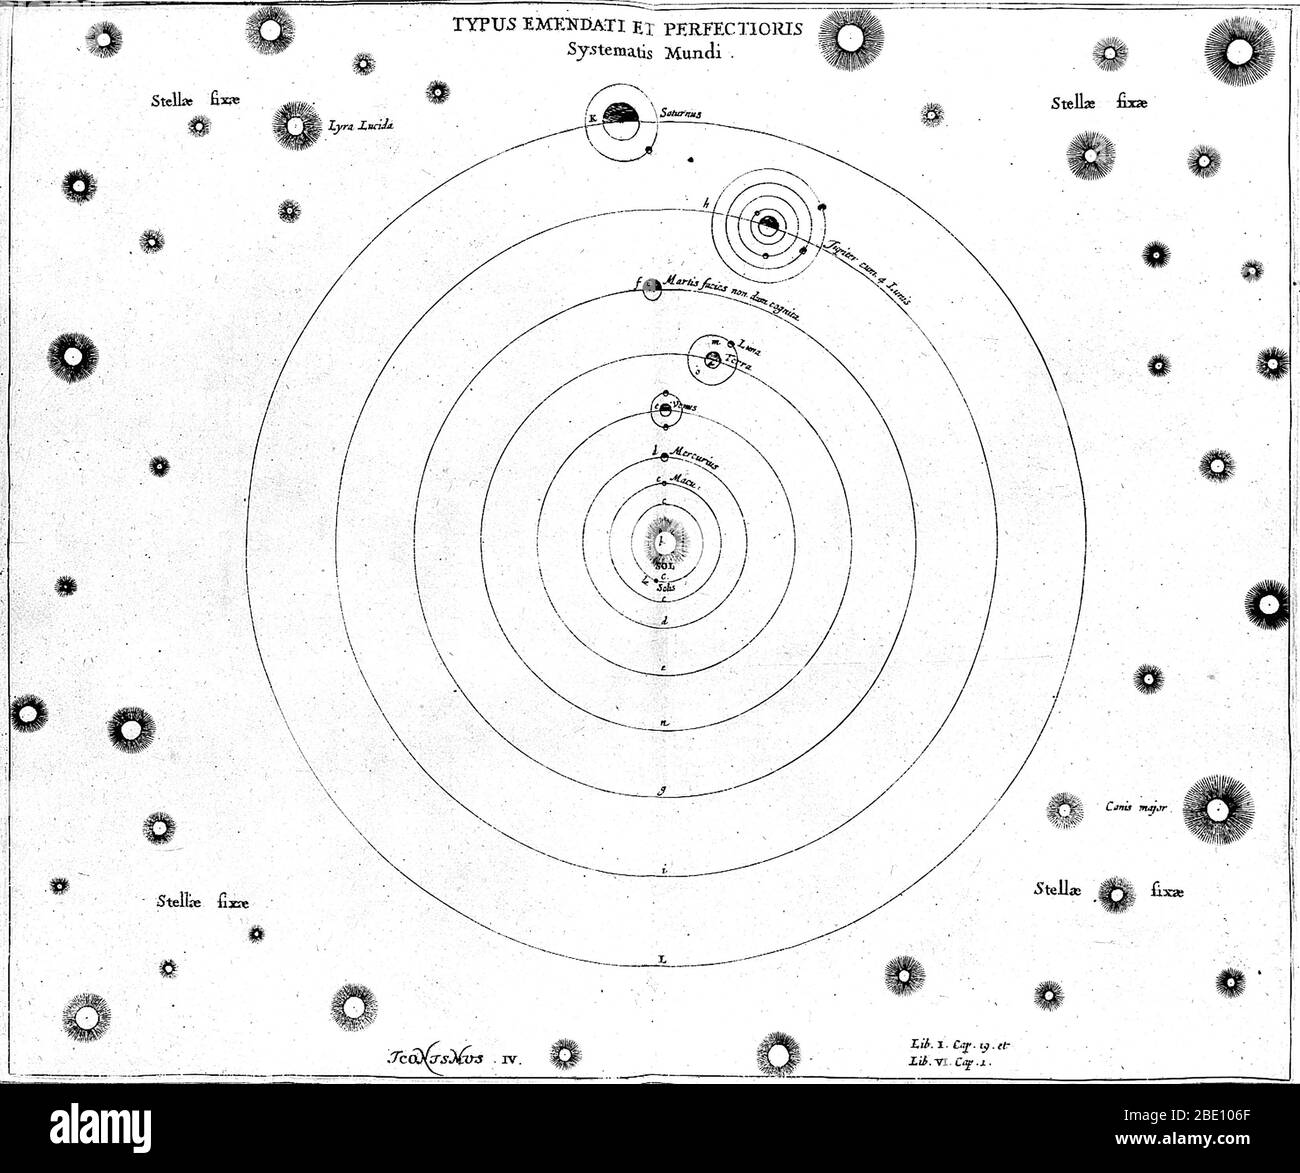 O. von Guericke, sistema solare, XVII secolo. Schema del sistema solare, pubblicato in Experimenta Nova (1672) dallo scienziato e inventore tedesco otto von Guericke (1602-1686). Il Sole è al centro, circondato da due punti solari: Mercurio, Venere, Terra, Marte, Giove e Saturno. Una luna è mostrata orbitante Venere (una teoria più successivamente screditata), con la Luna orbitante la Terra, quattro lune intorno a Giove, e una intorno a Saturno. Gli altri pianeti non erano ancora stati scoperti. Intorno al sistema solare si trovano le "stelle fisse", tra cui Lyra Lucida (in alto a sinistra) e Canis Major (in basso a destra). Foto Stock